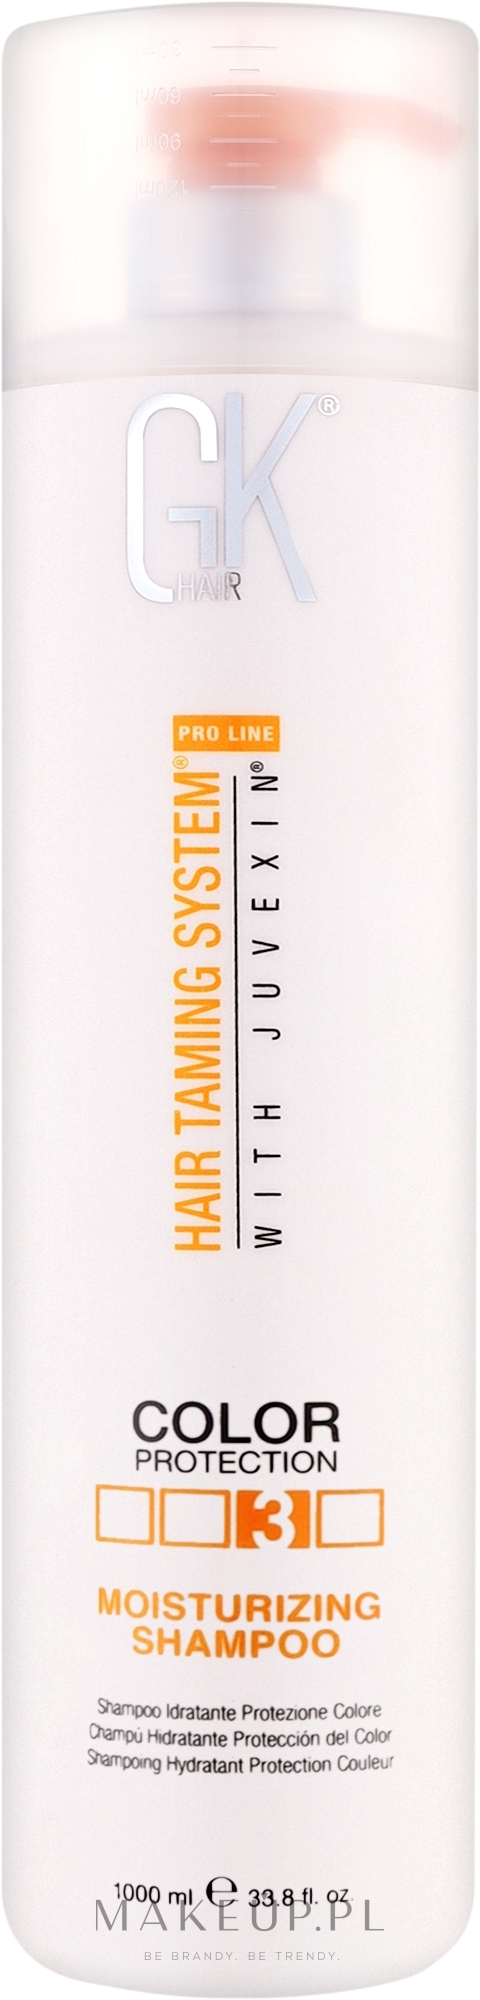 Nawilżający szampon do włosów - GKhair Moisturizing Shampoo — Zdjęcie 1000 ml